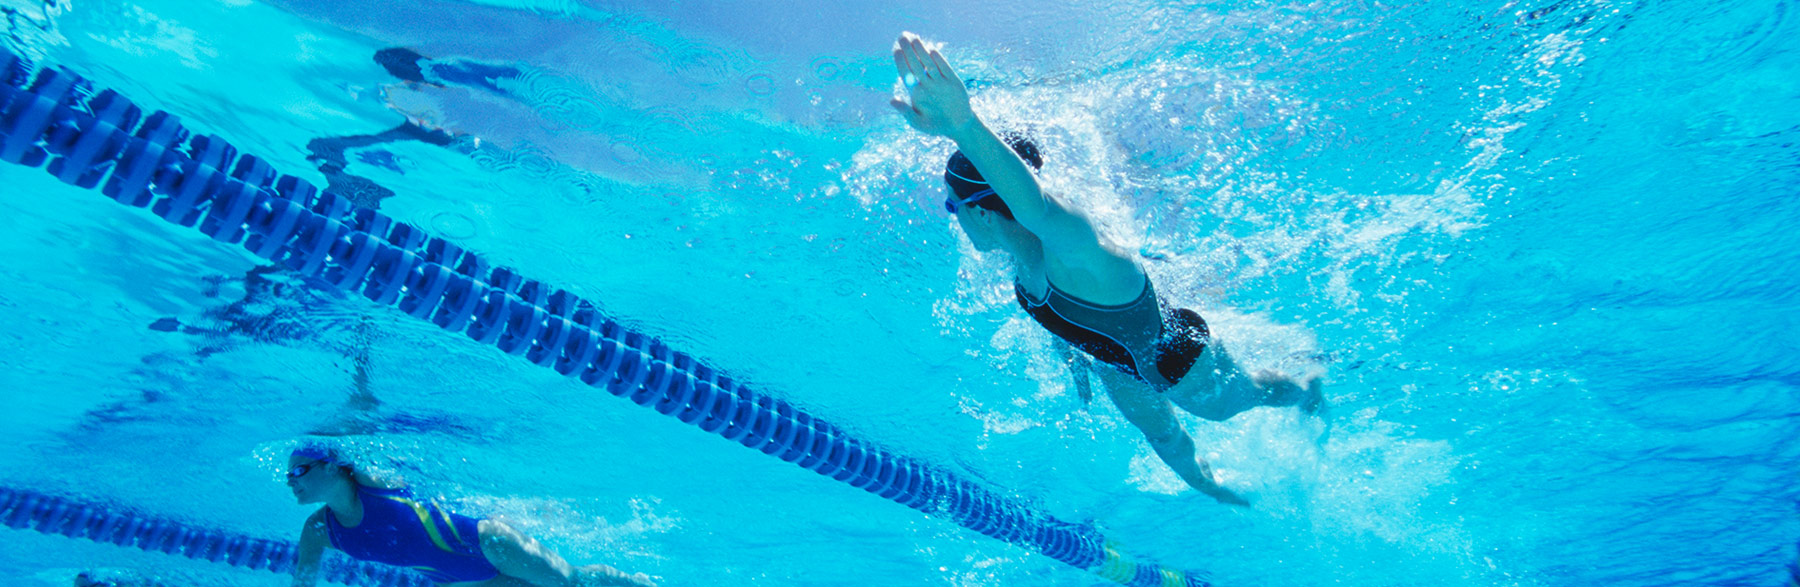 Clases de natación para principiantes